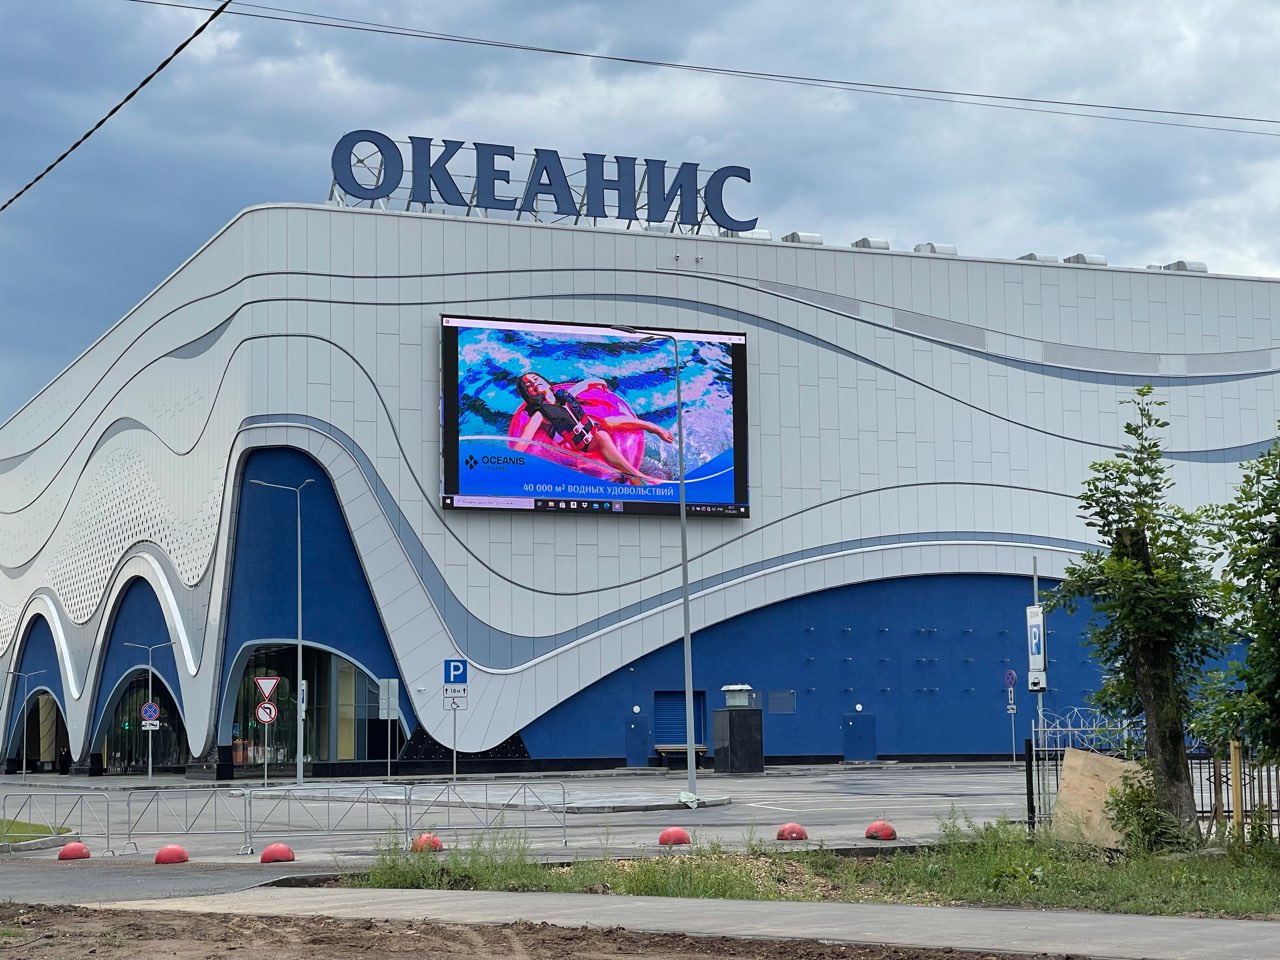  Аквапарк «Океанис» откроется в Нижнем Новгороде к майским праздникам  - фото 1